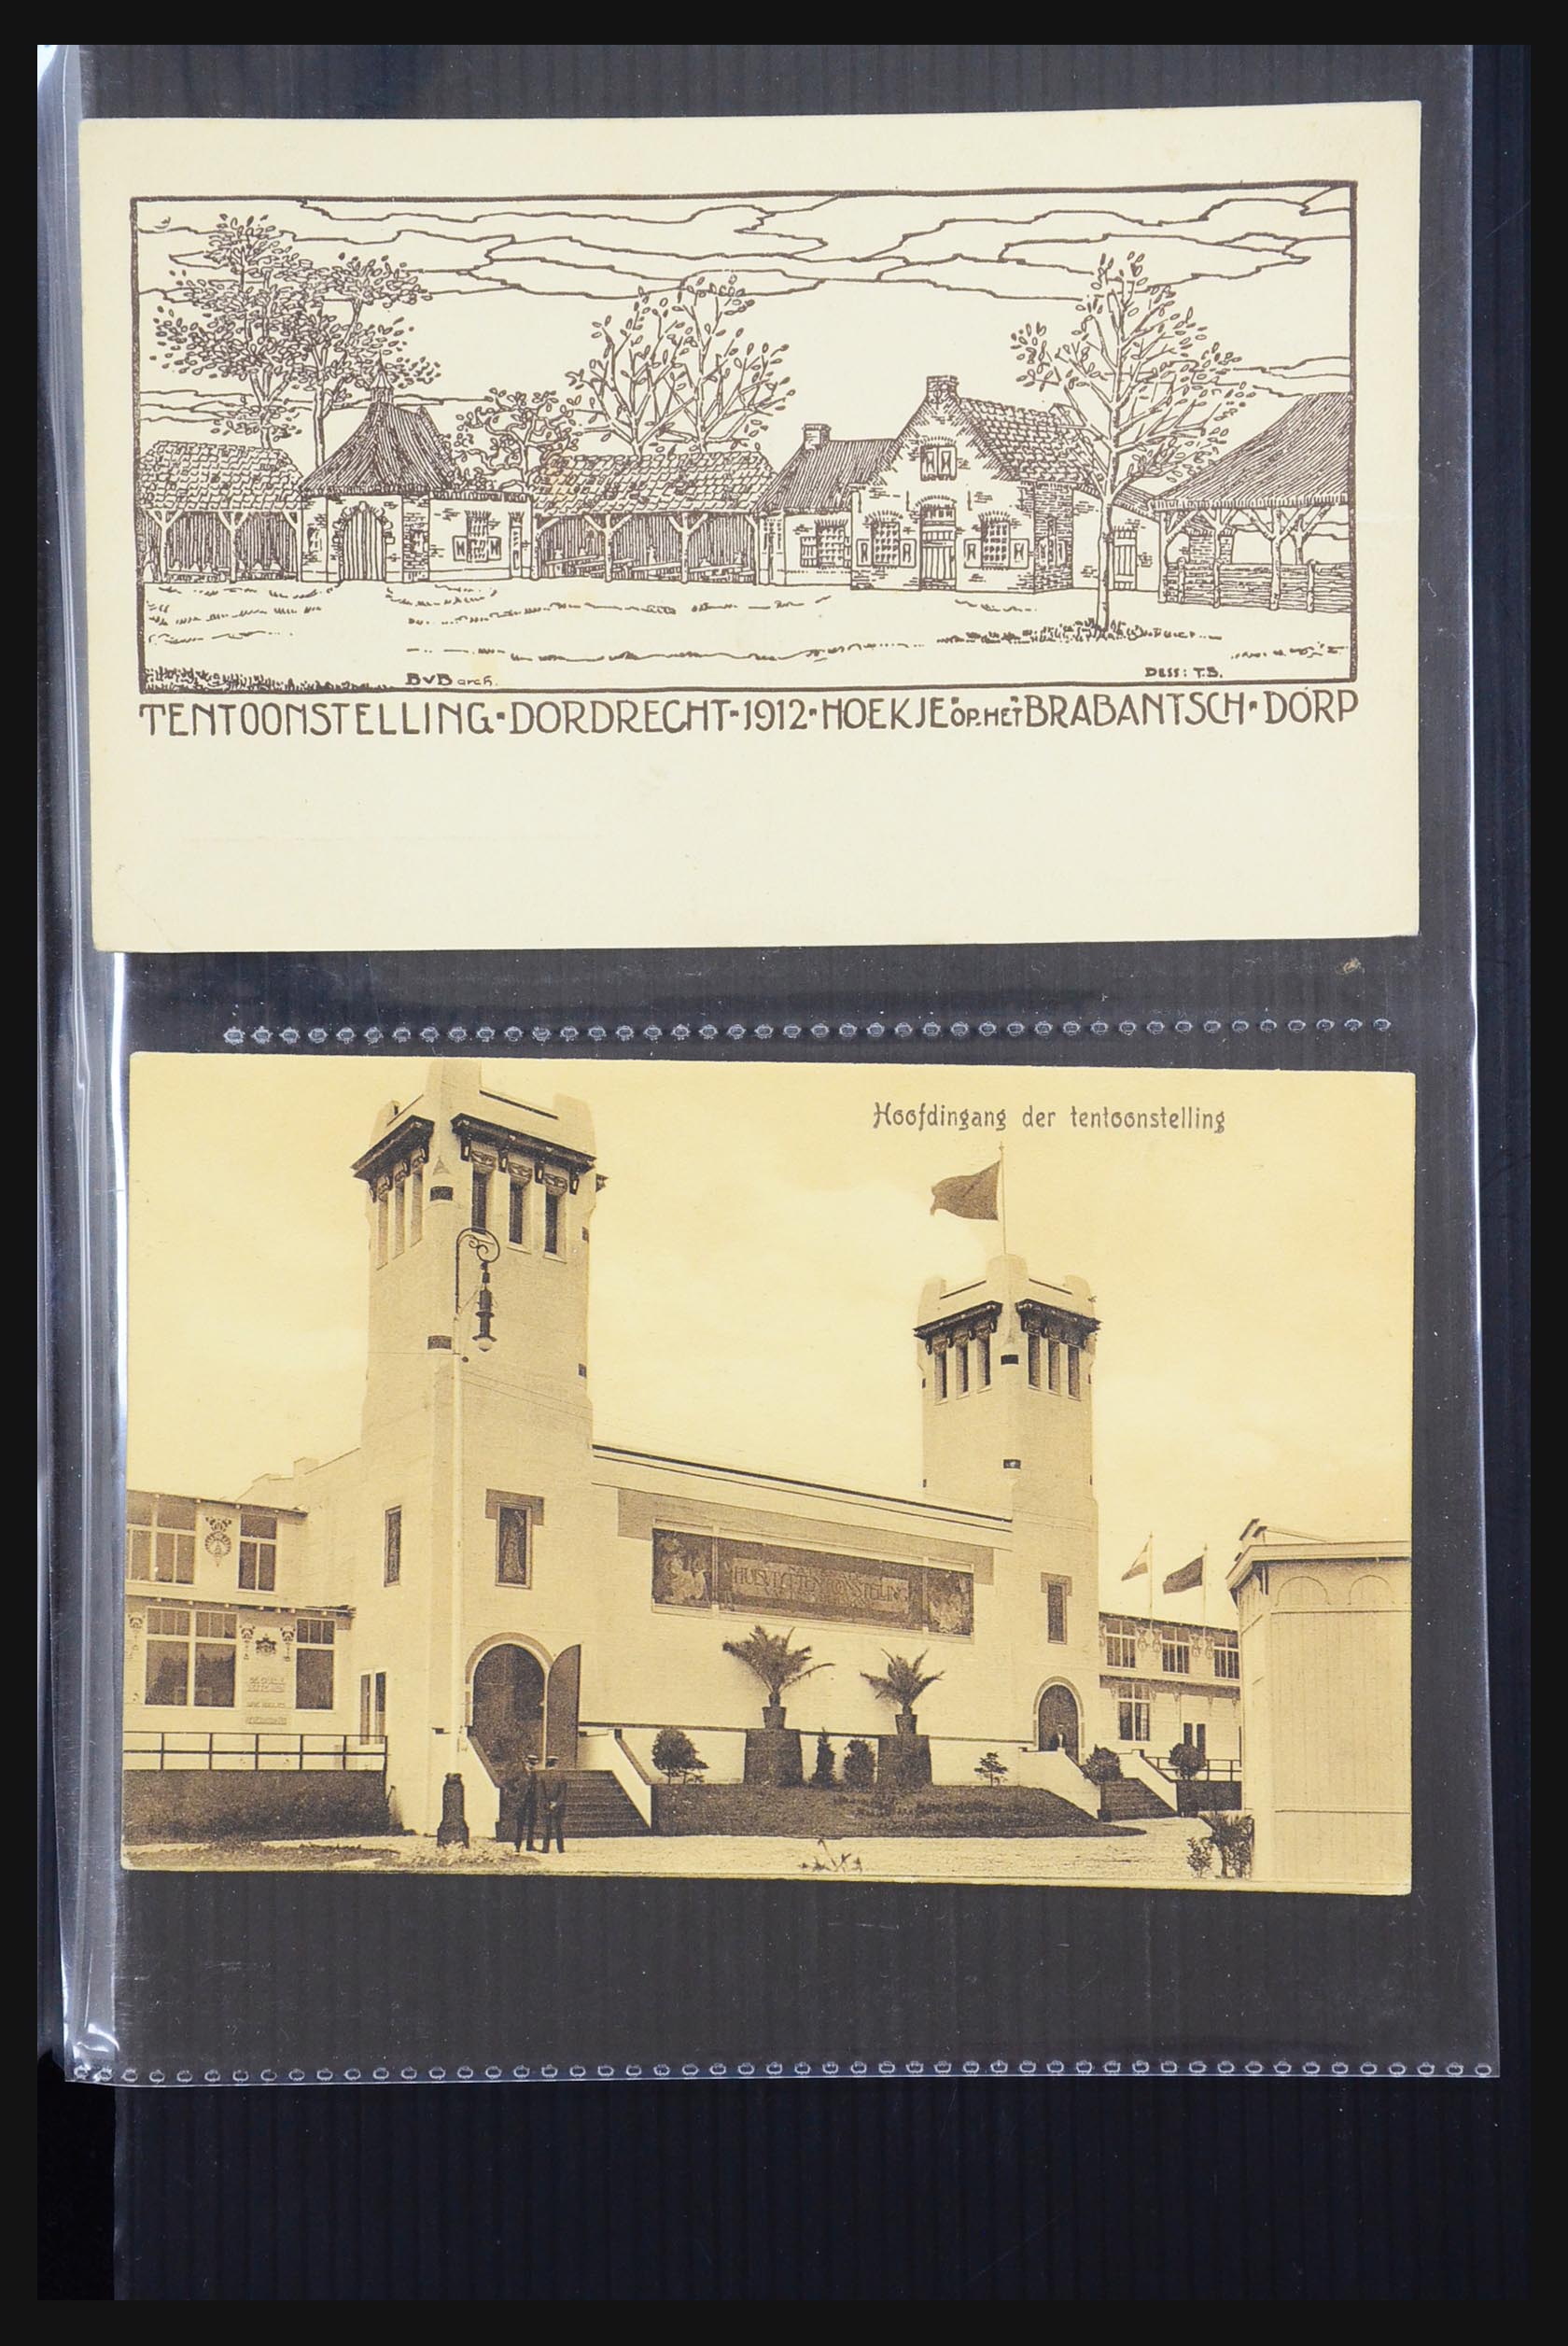 31338 025 - 31338 Nederland ansichtkaarten 1897-1914.